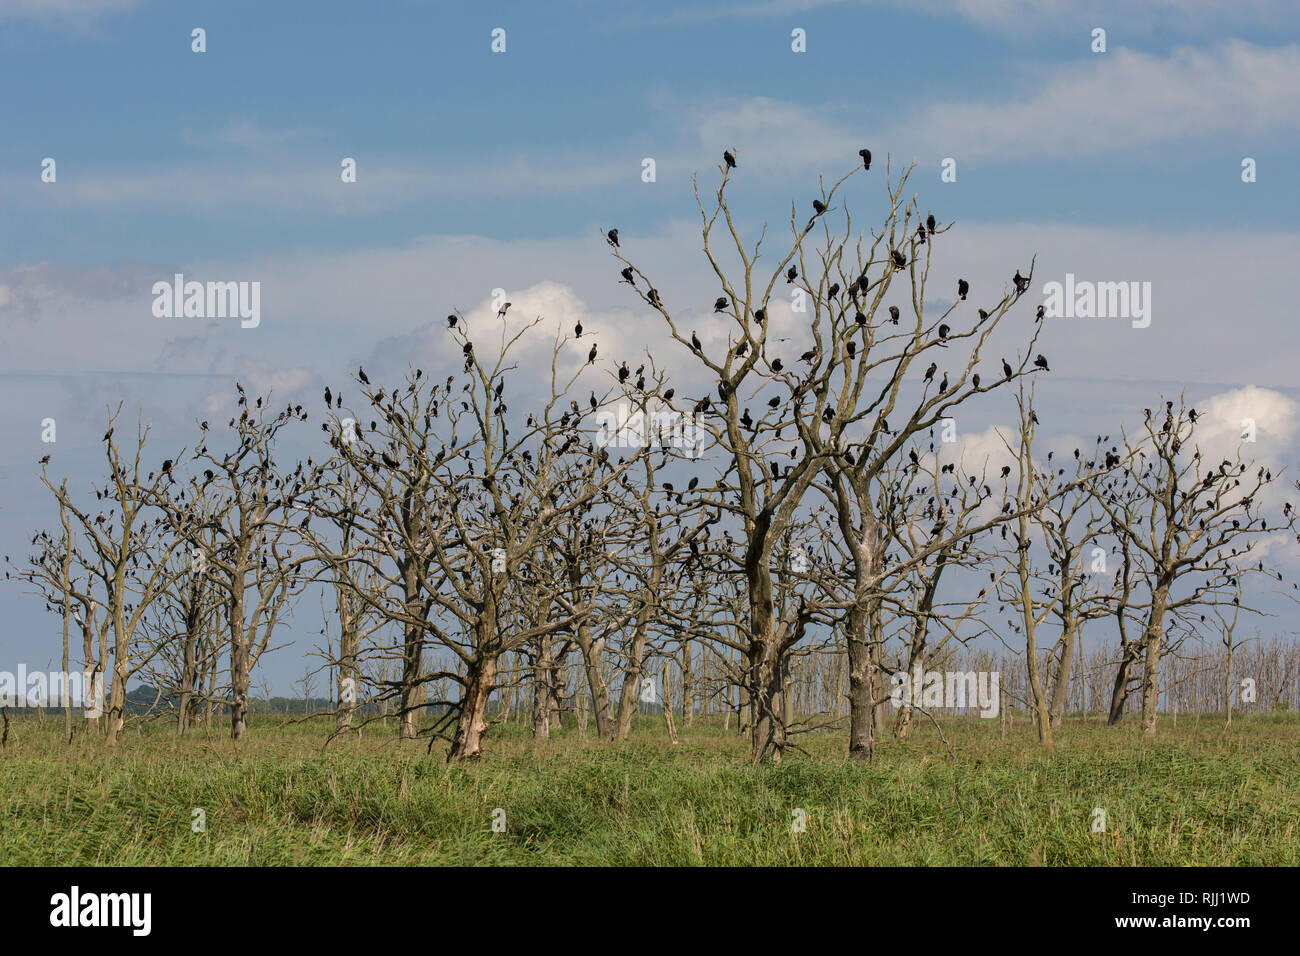 Cormorano (Phalacrocorax carbo). Gli uccelli in appoggio su alberi morti. Riserva naturale Anklamer Stadtbruch, Meclemburgo-Pomerania Occidentale, Germania Foto Stock